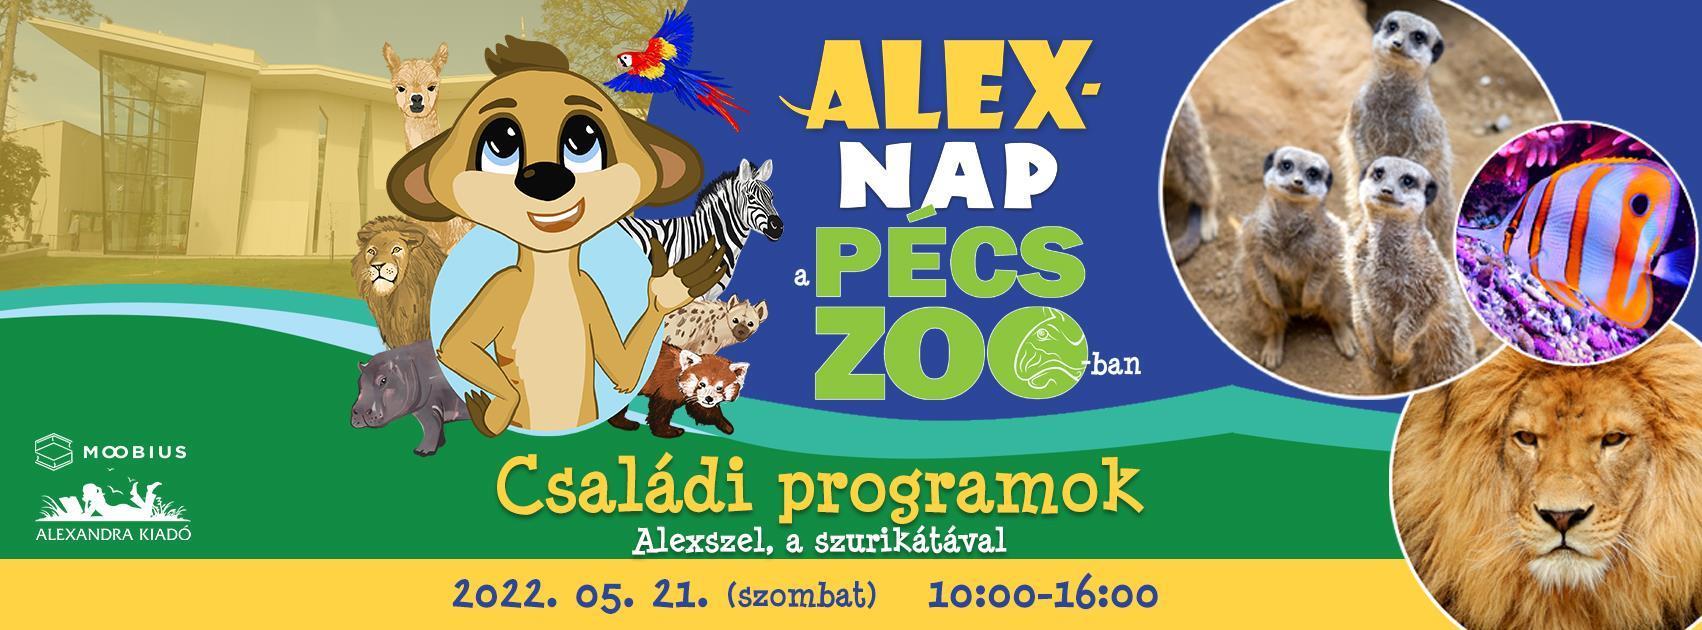 Alex-nap a Pécs Zoo-ban! 